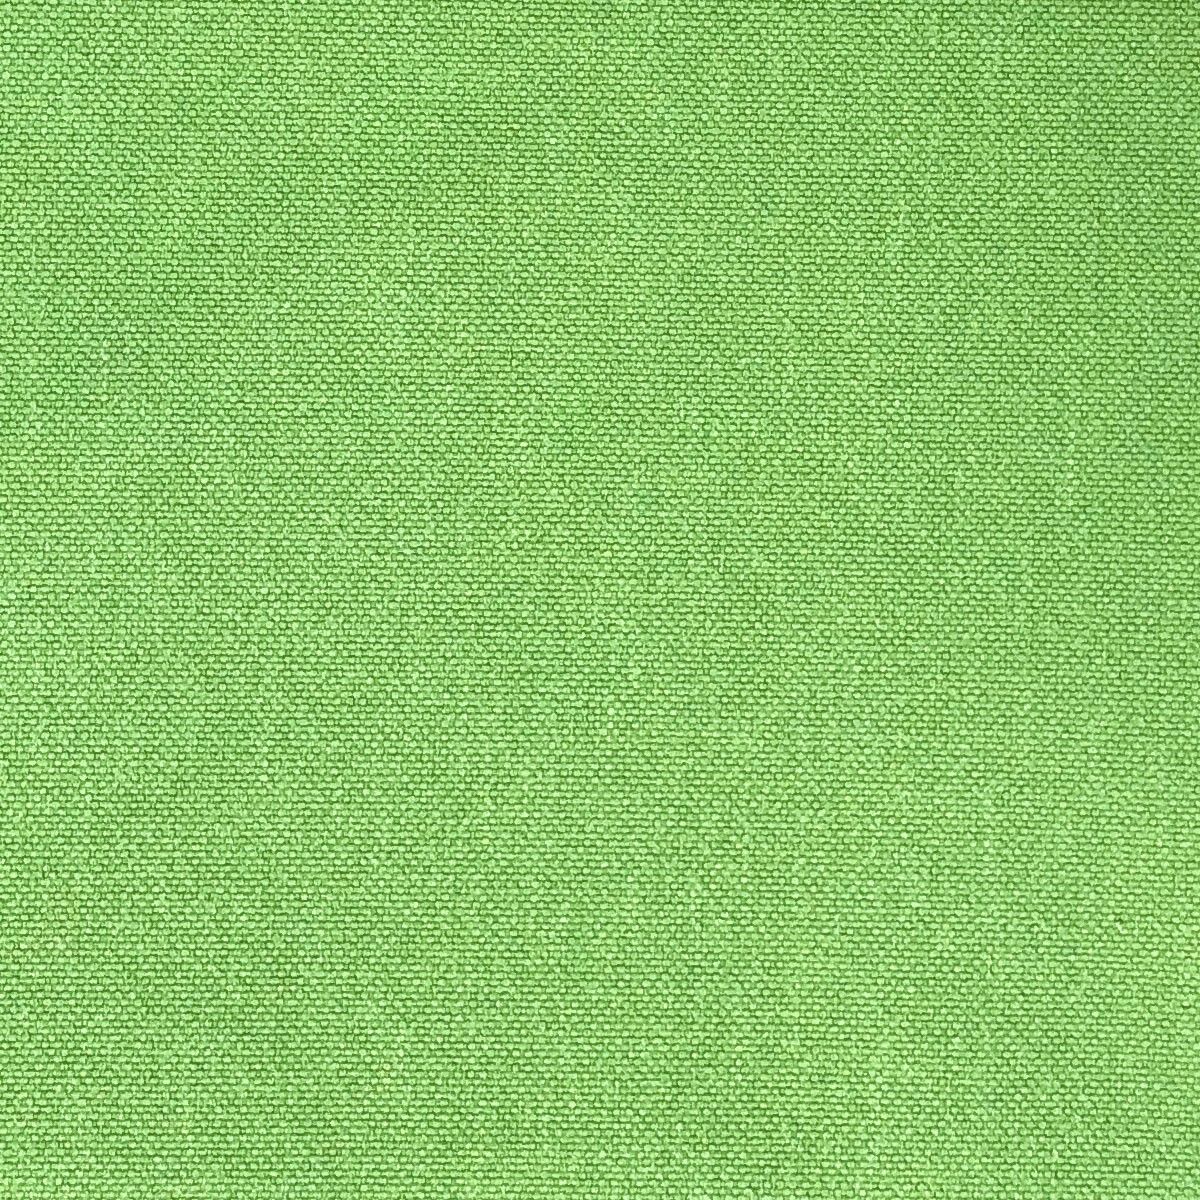 Glinara Thyme Fabric by Chatham Glyn